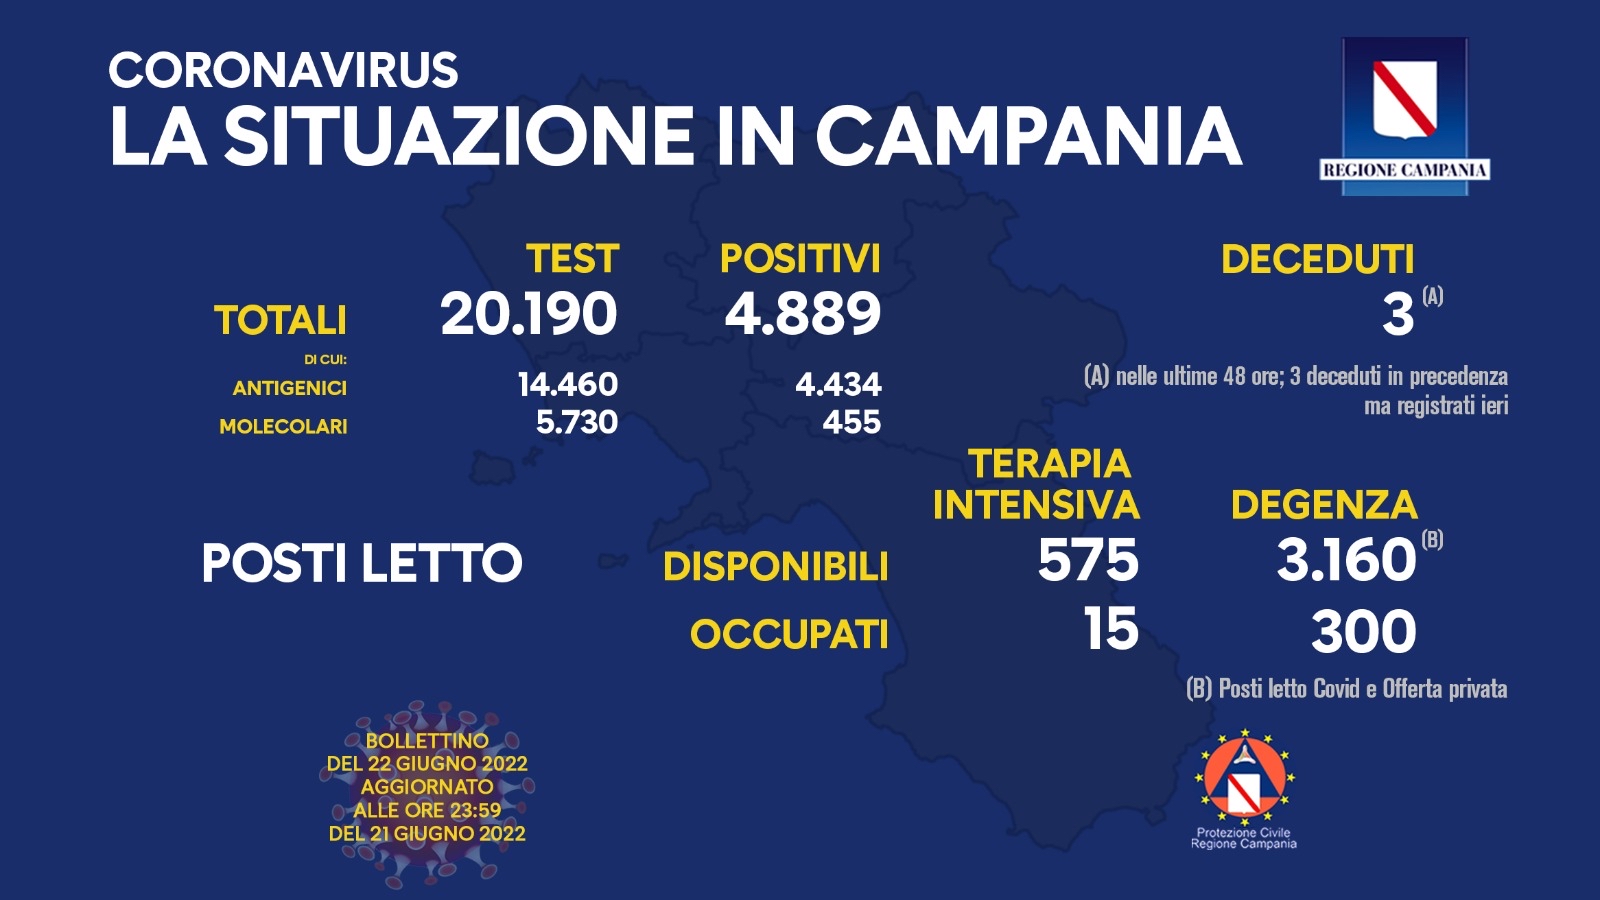 Covid 19 in Campania, bollettino 21 giugno: 4.434 positivi